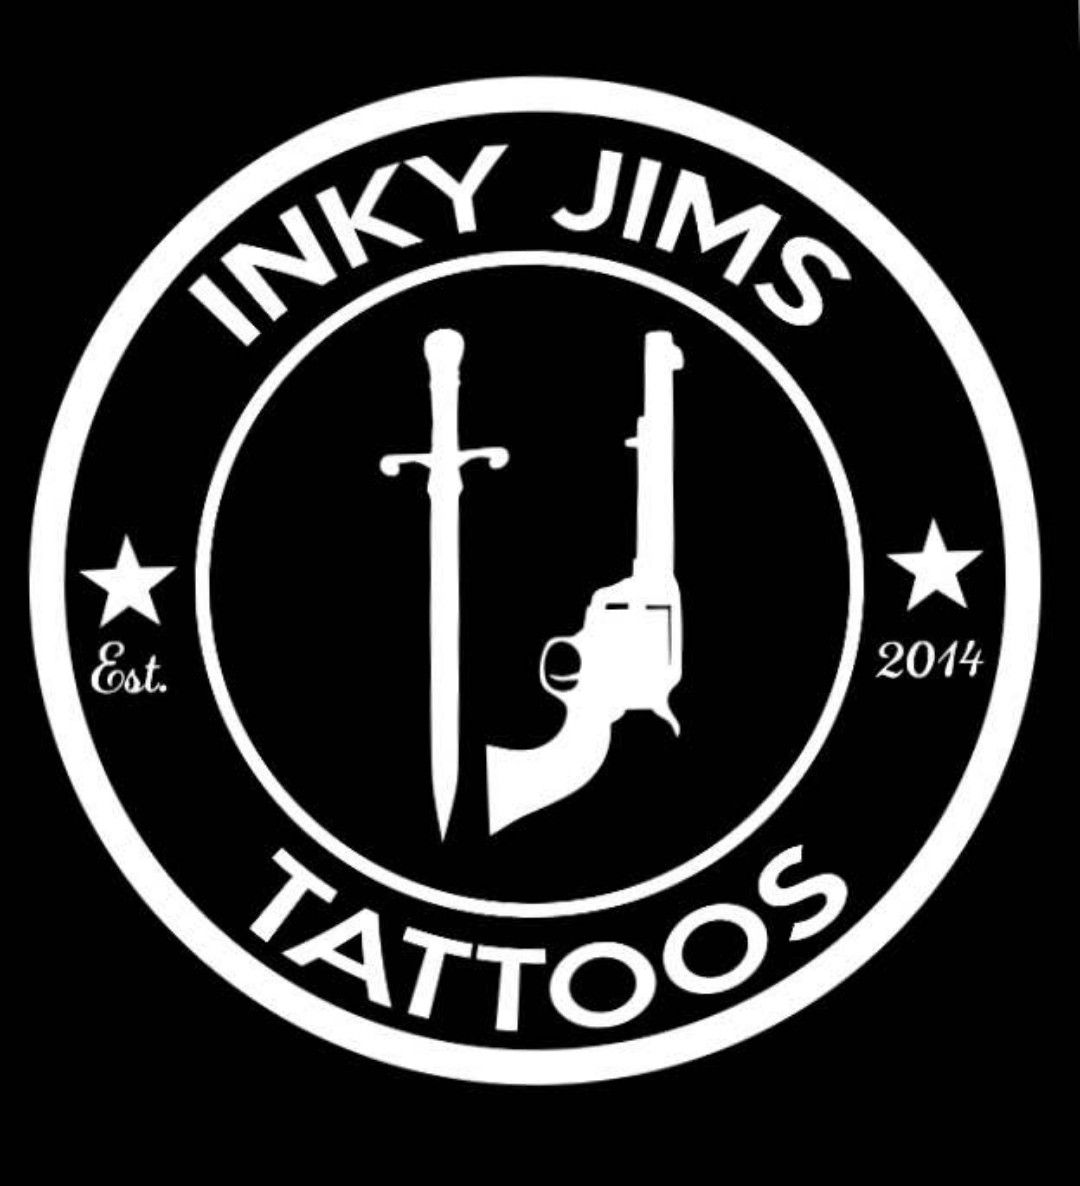 Inky Jims Tattoos • Tattoo Studio • Tattoodo